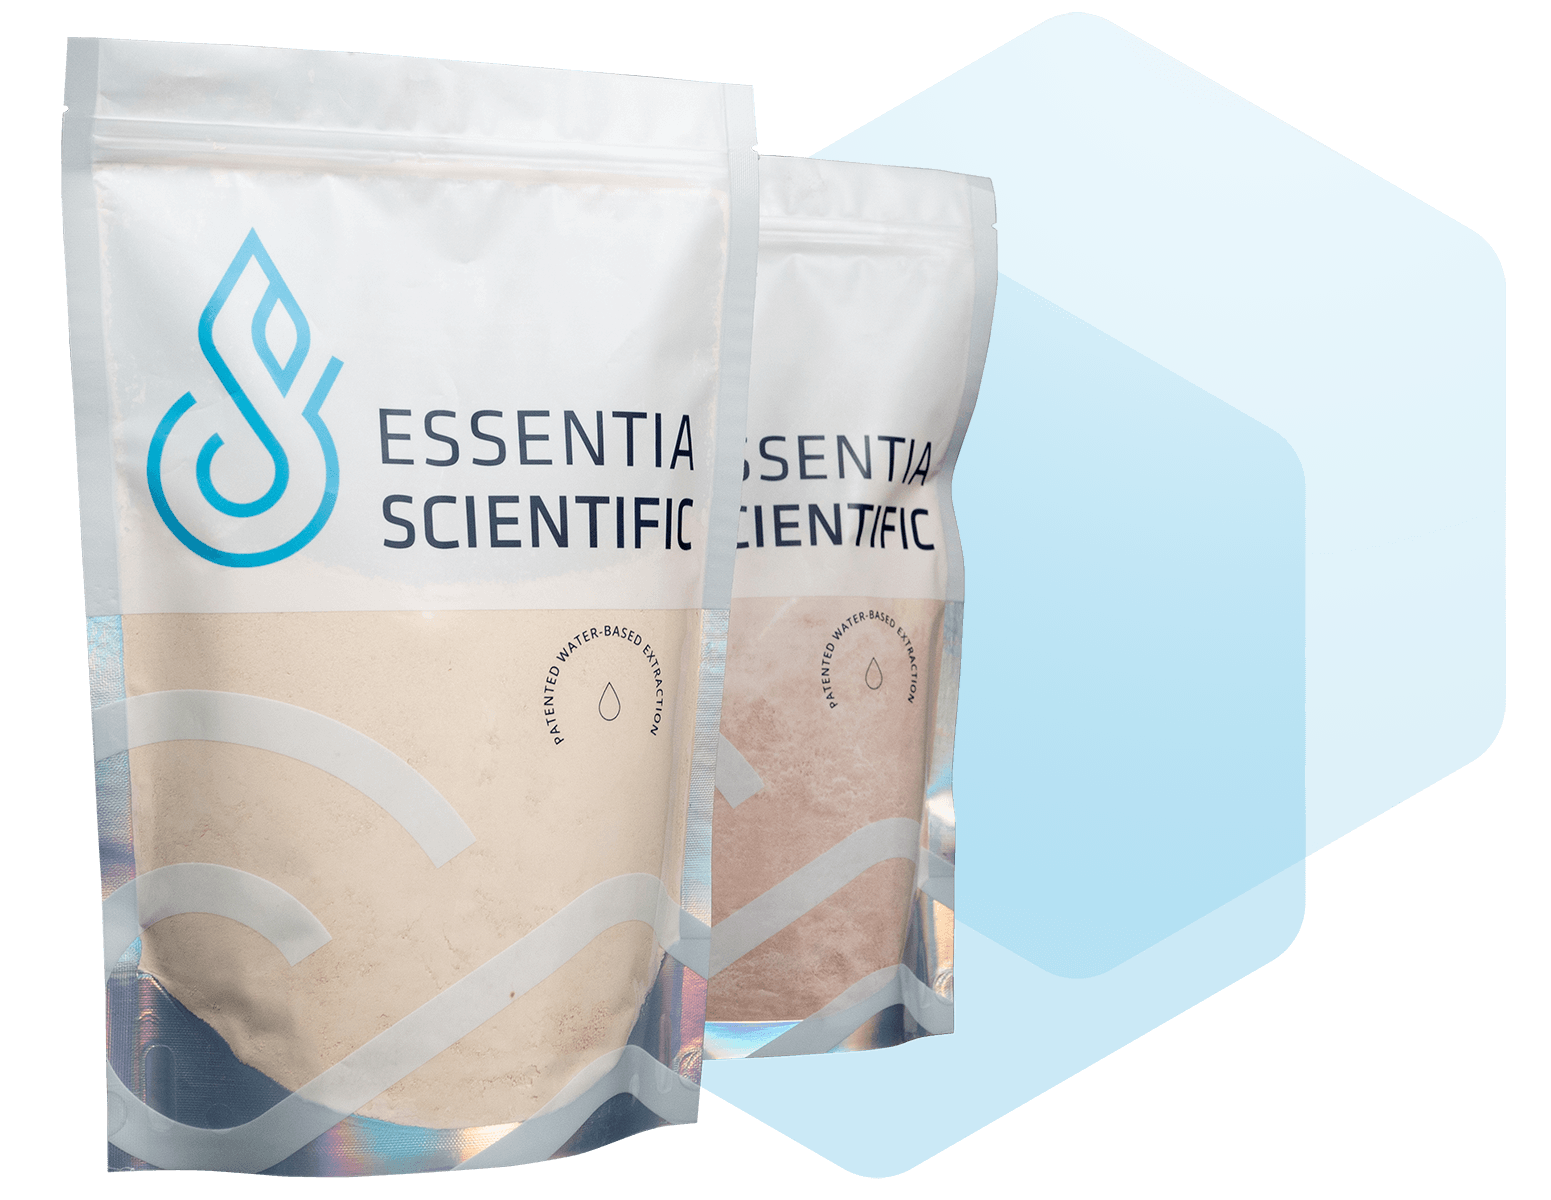 Essentia Package - Natural Cannabinoid Manufacturer | Essentia Scientific